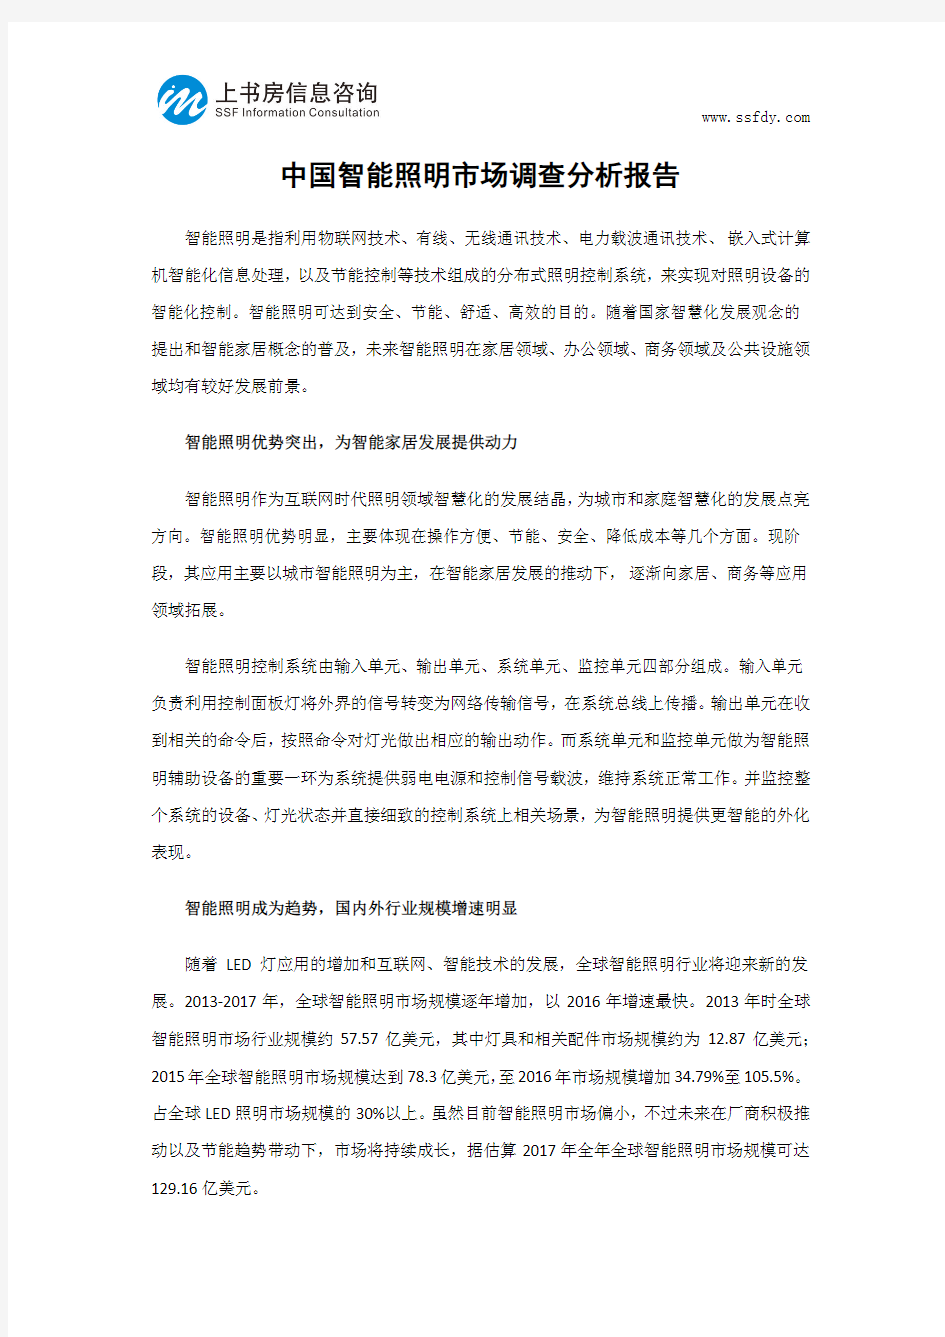 中国智能照明市场调查分析报告-上书房信息咨询